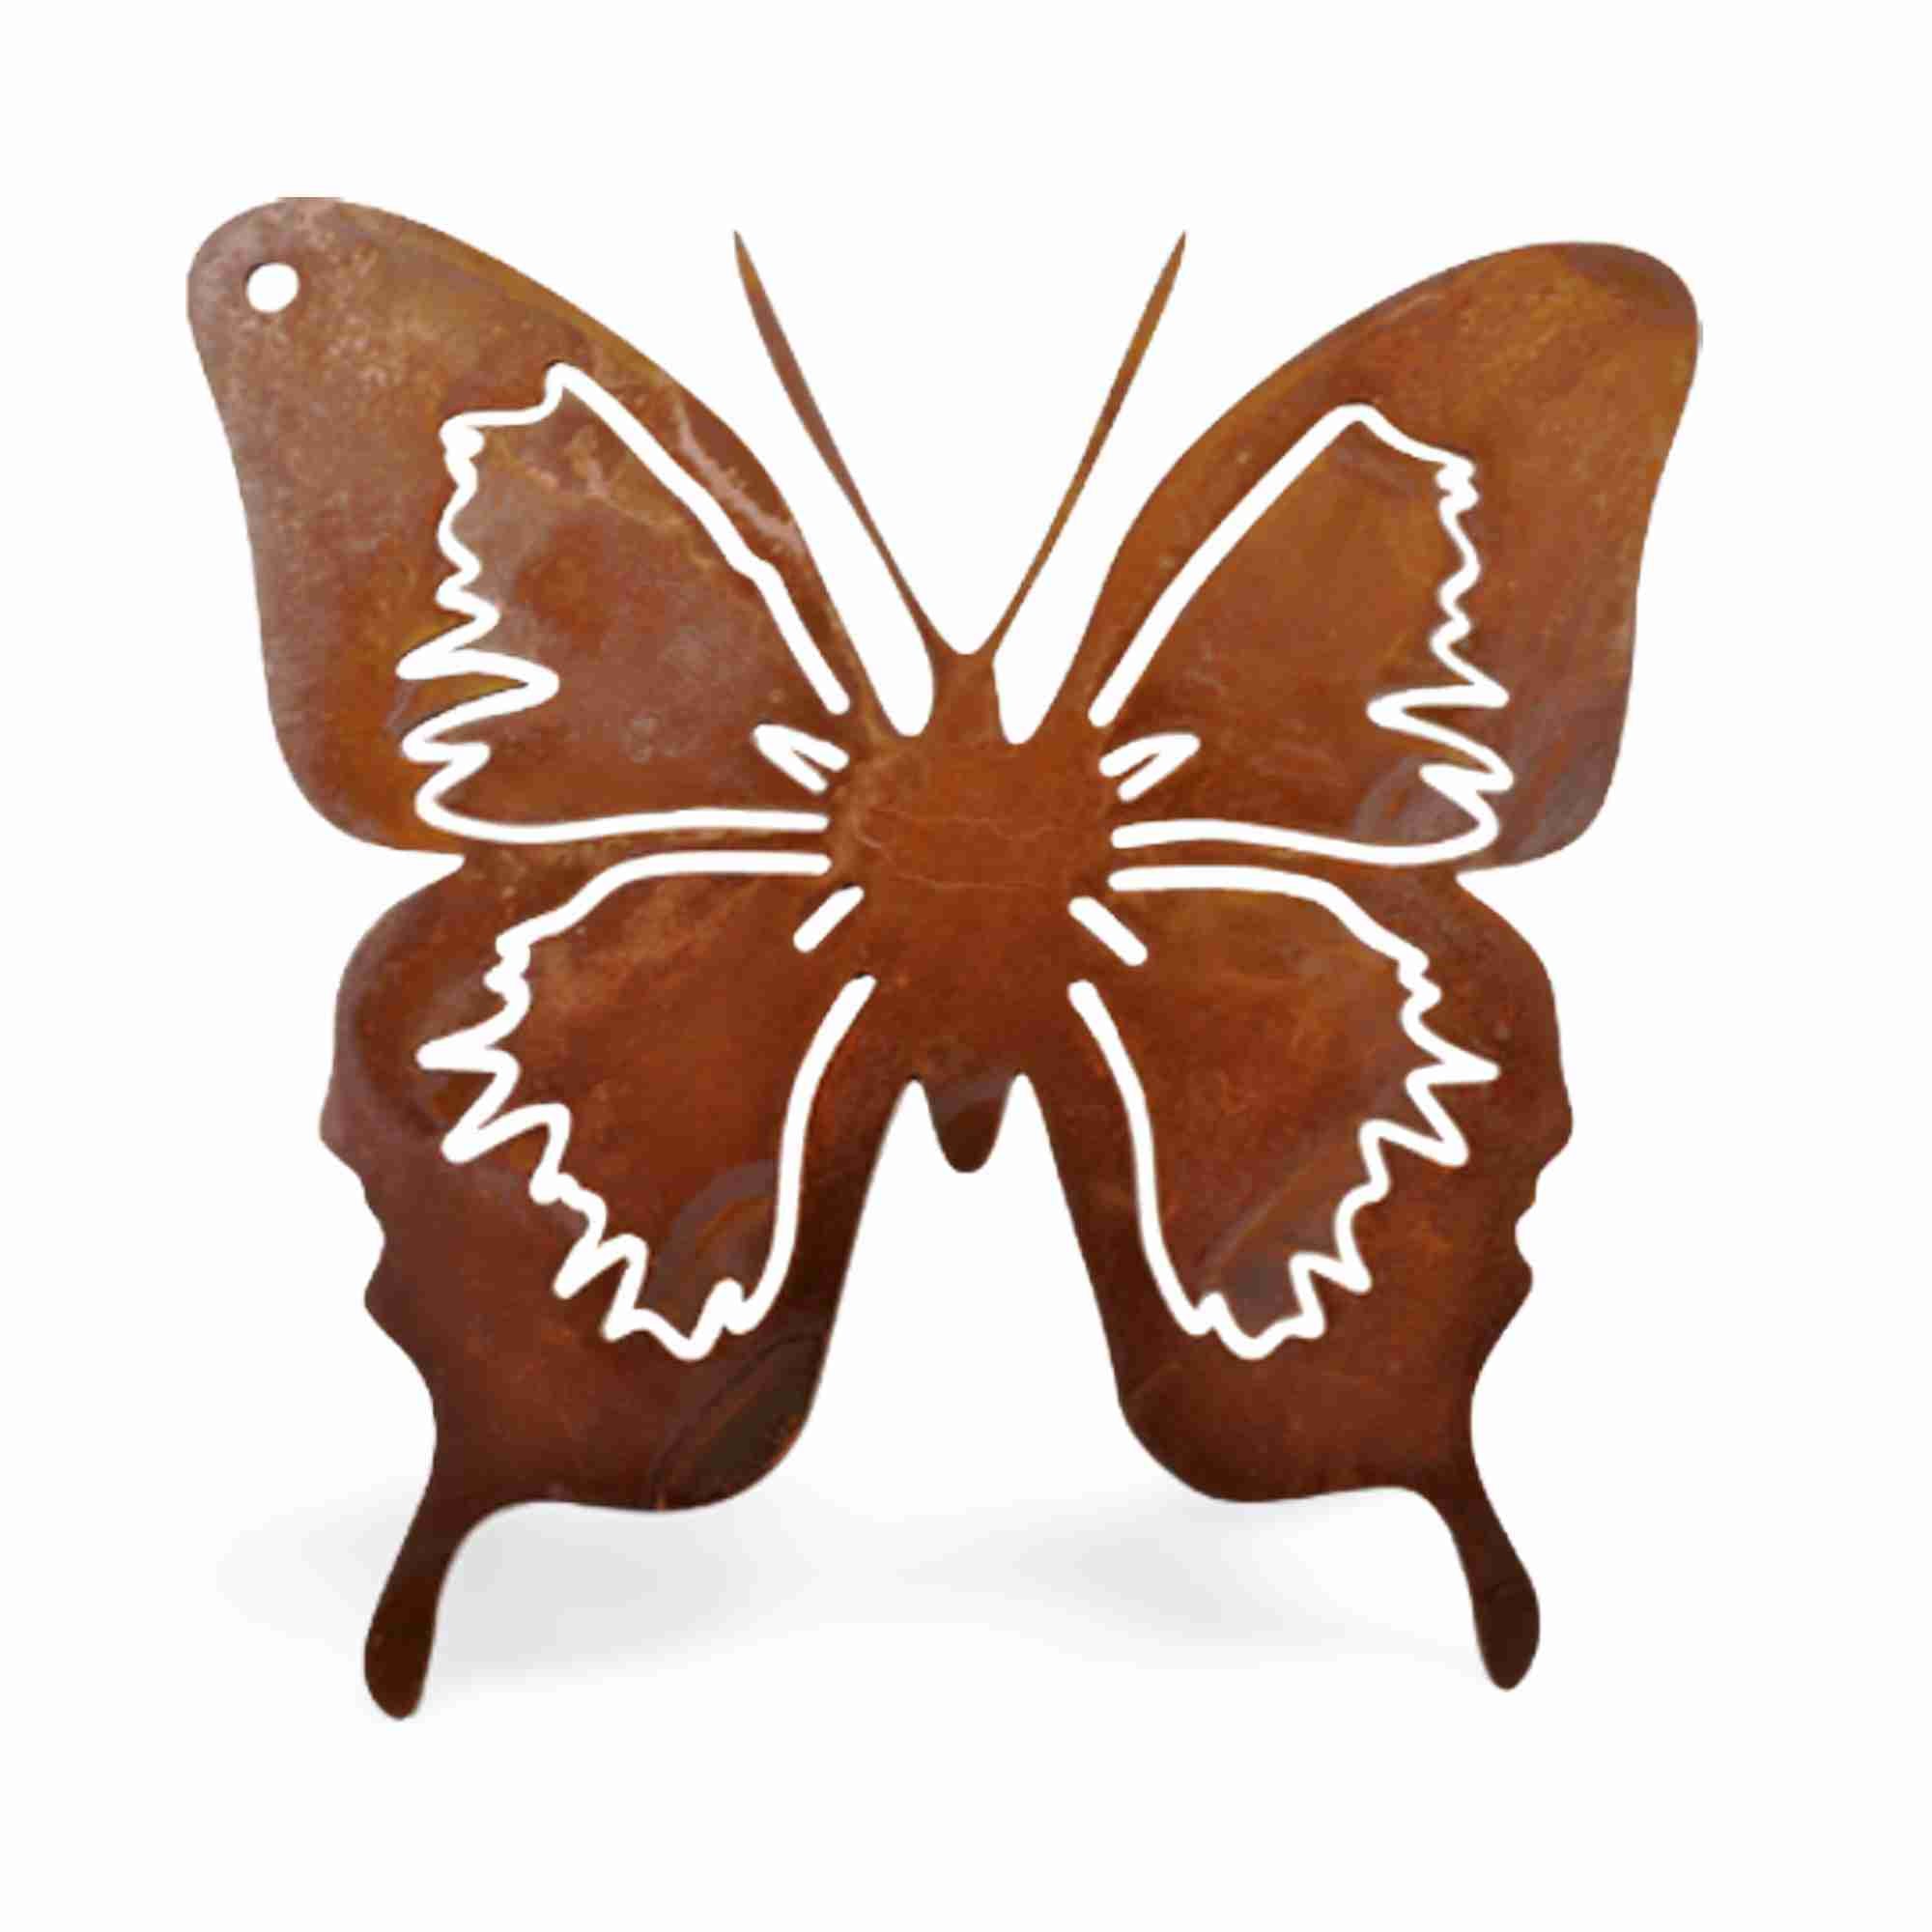 Filigraner Rost-Schmetterling aus Metall - Vielseitige Dekoration für Innen- & Außenbereich, ideal als Hängedeko oder Gartenstecker